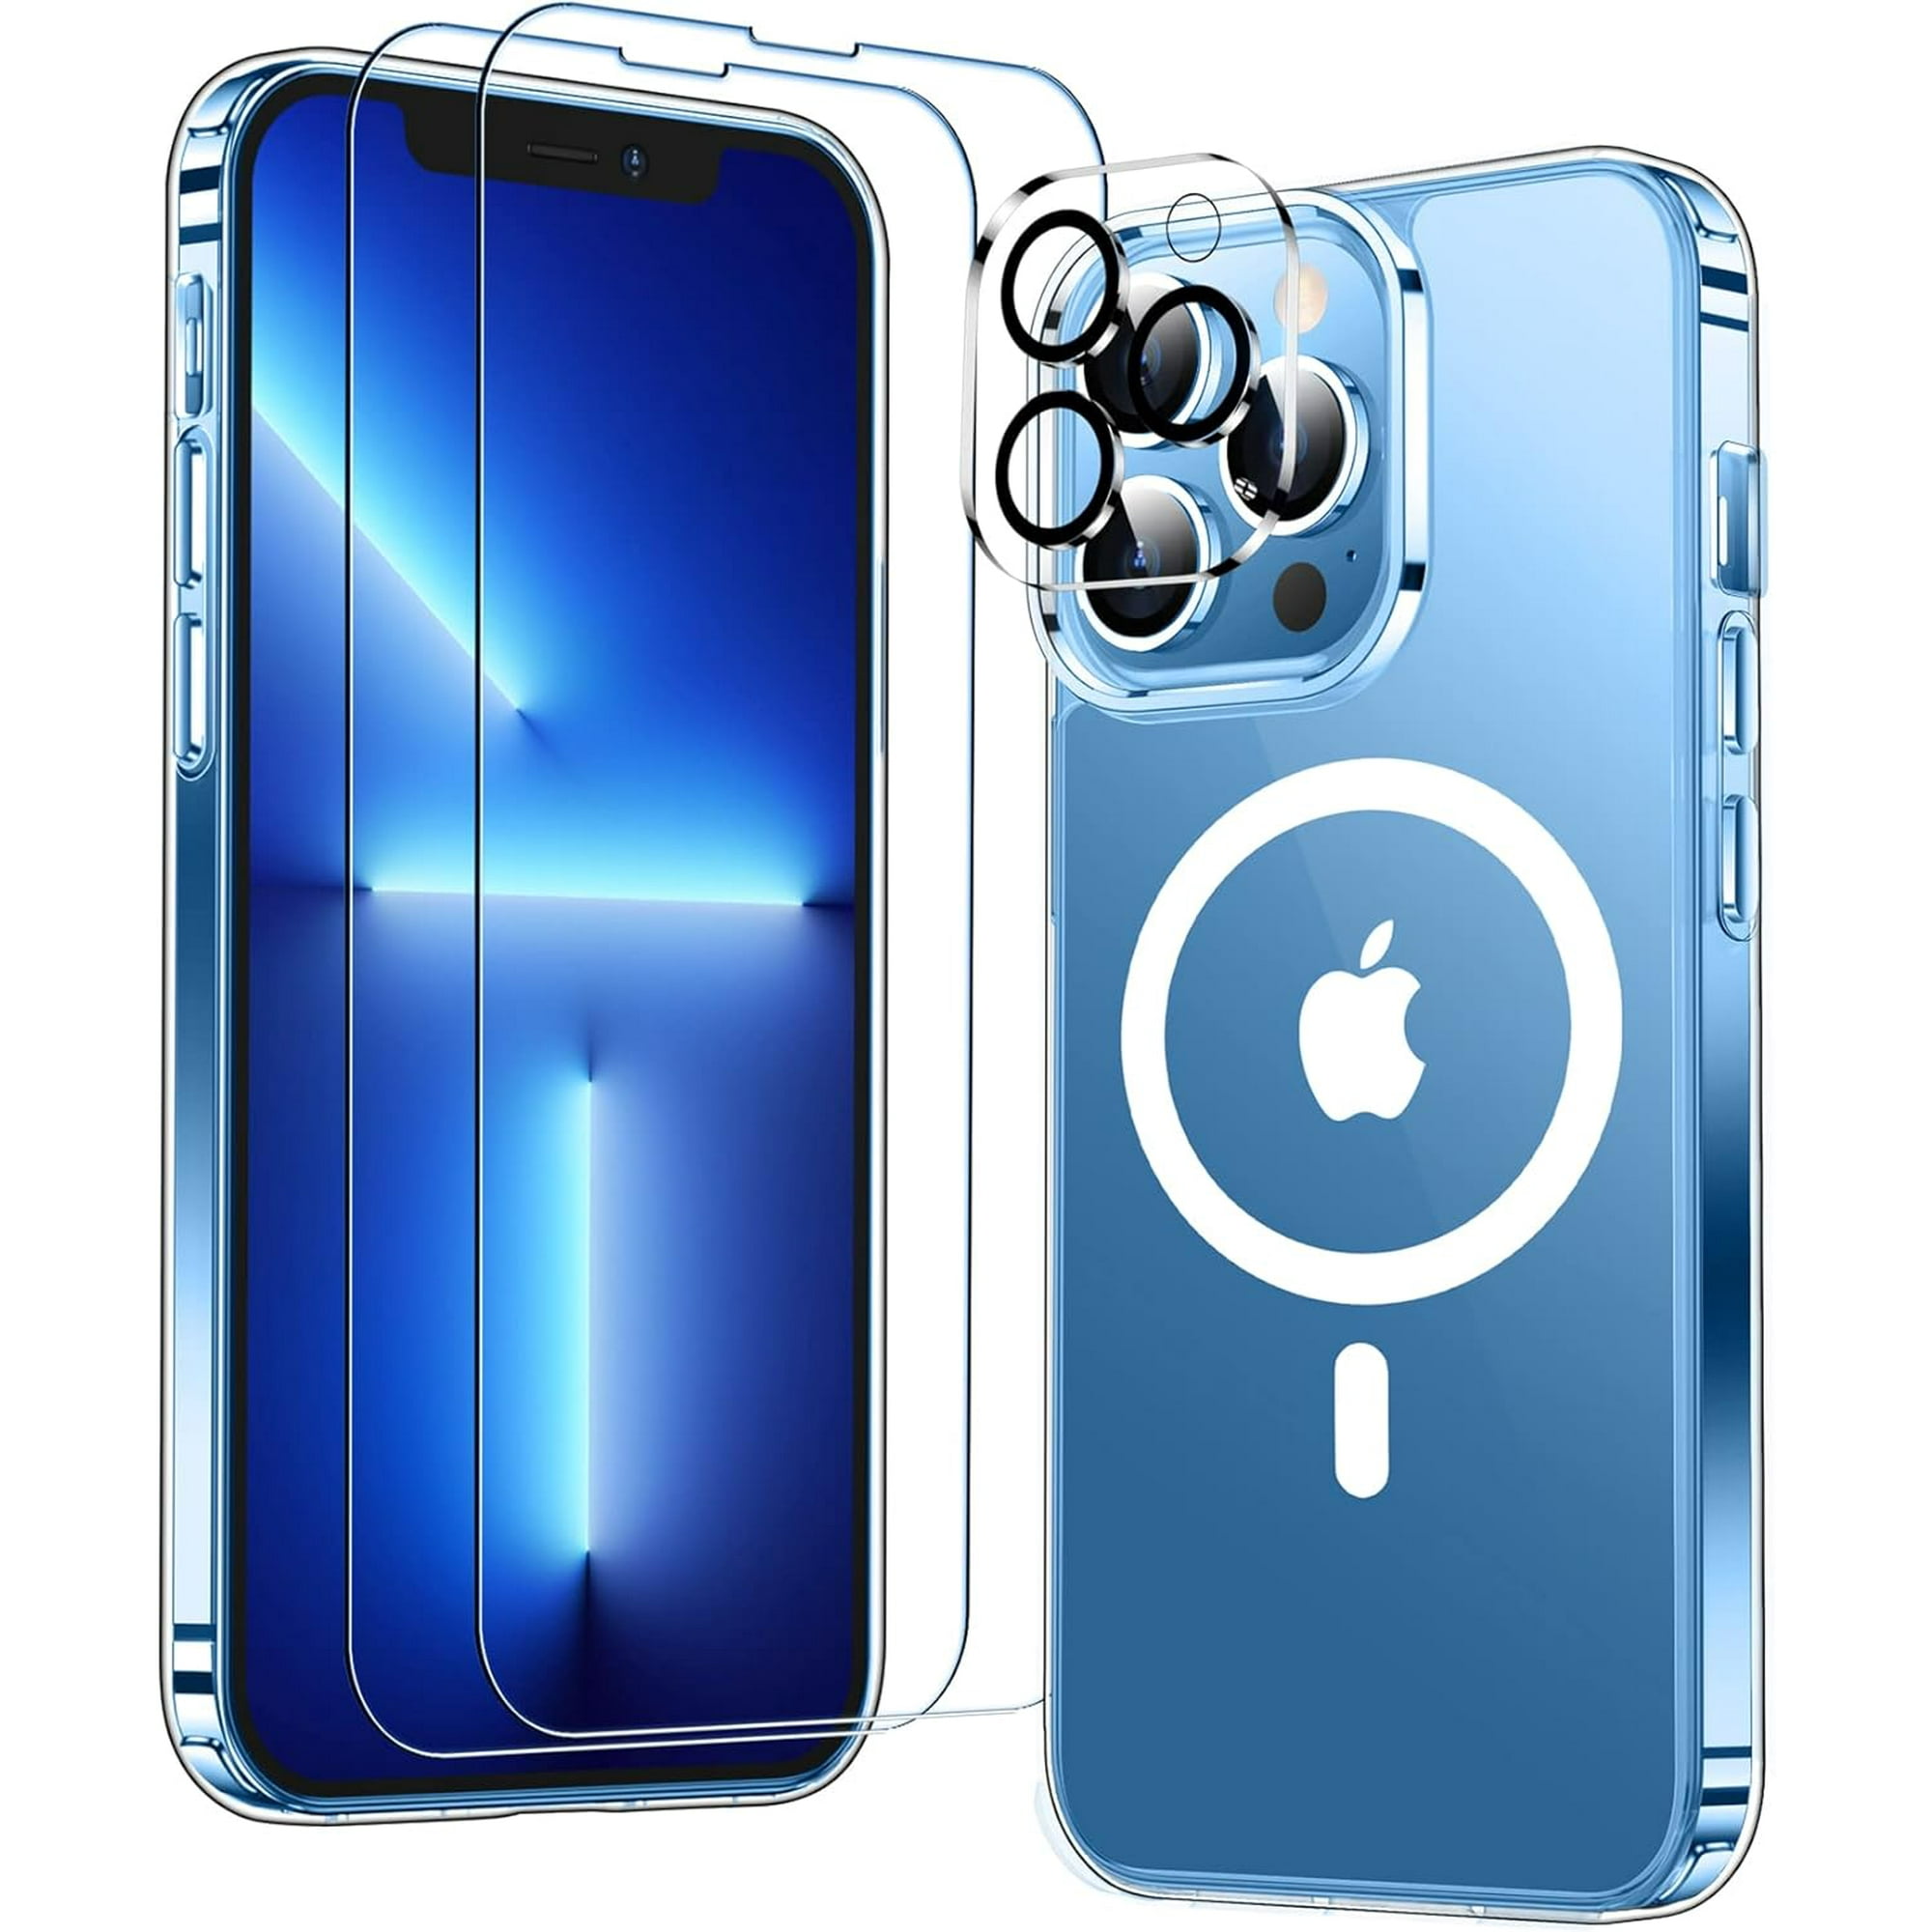  Temdan - Carcasa transparente para iPhone 12 y iPhone 12 Pro :  Celulares y Accesorios